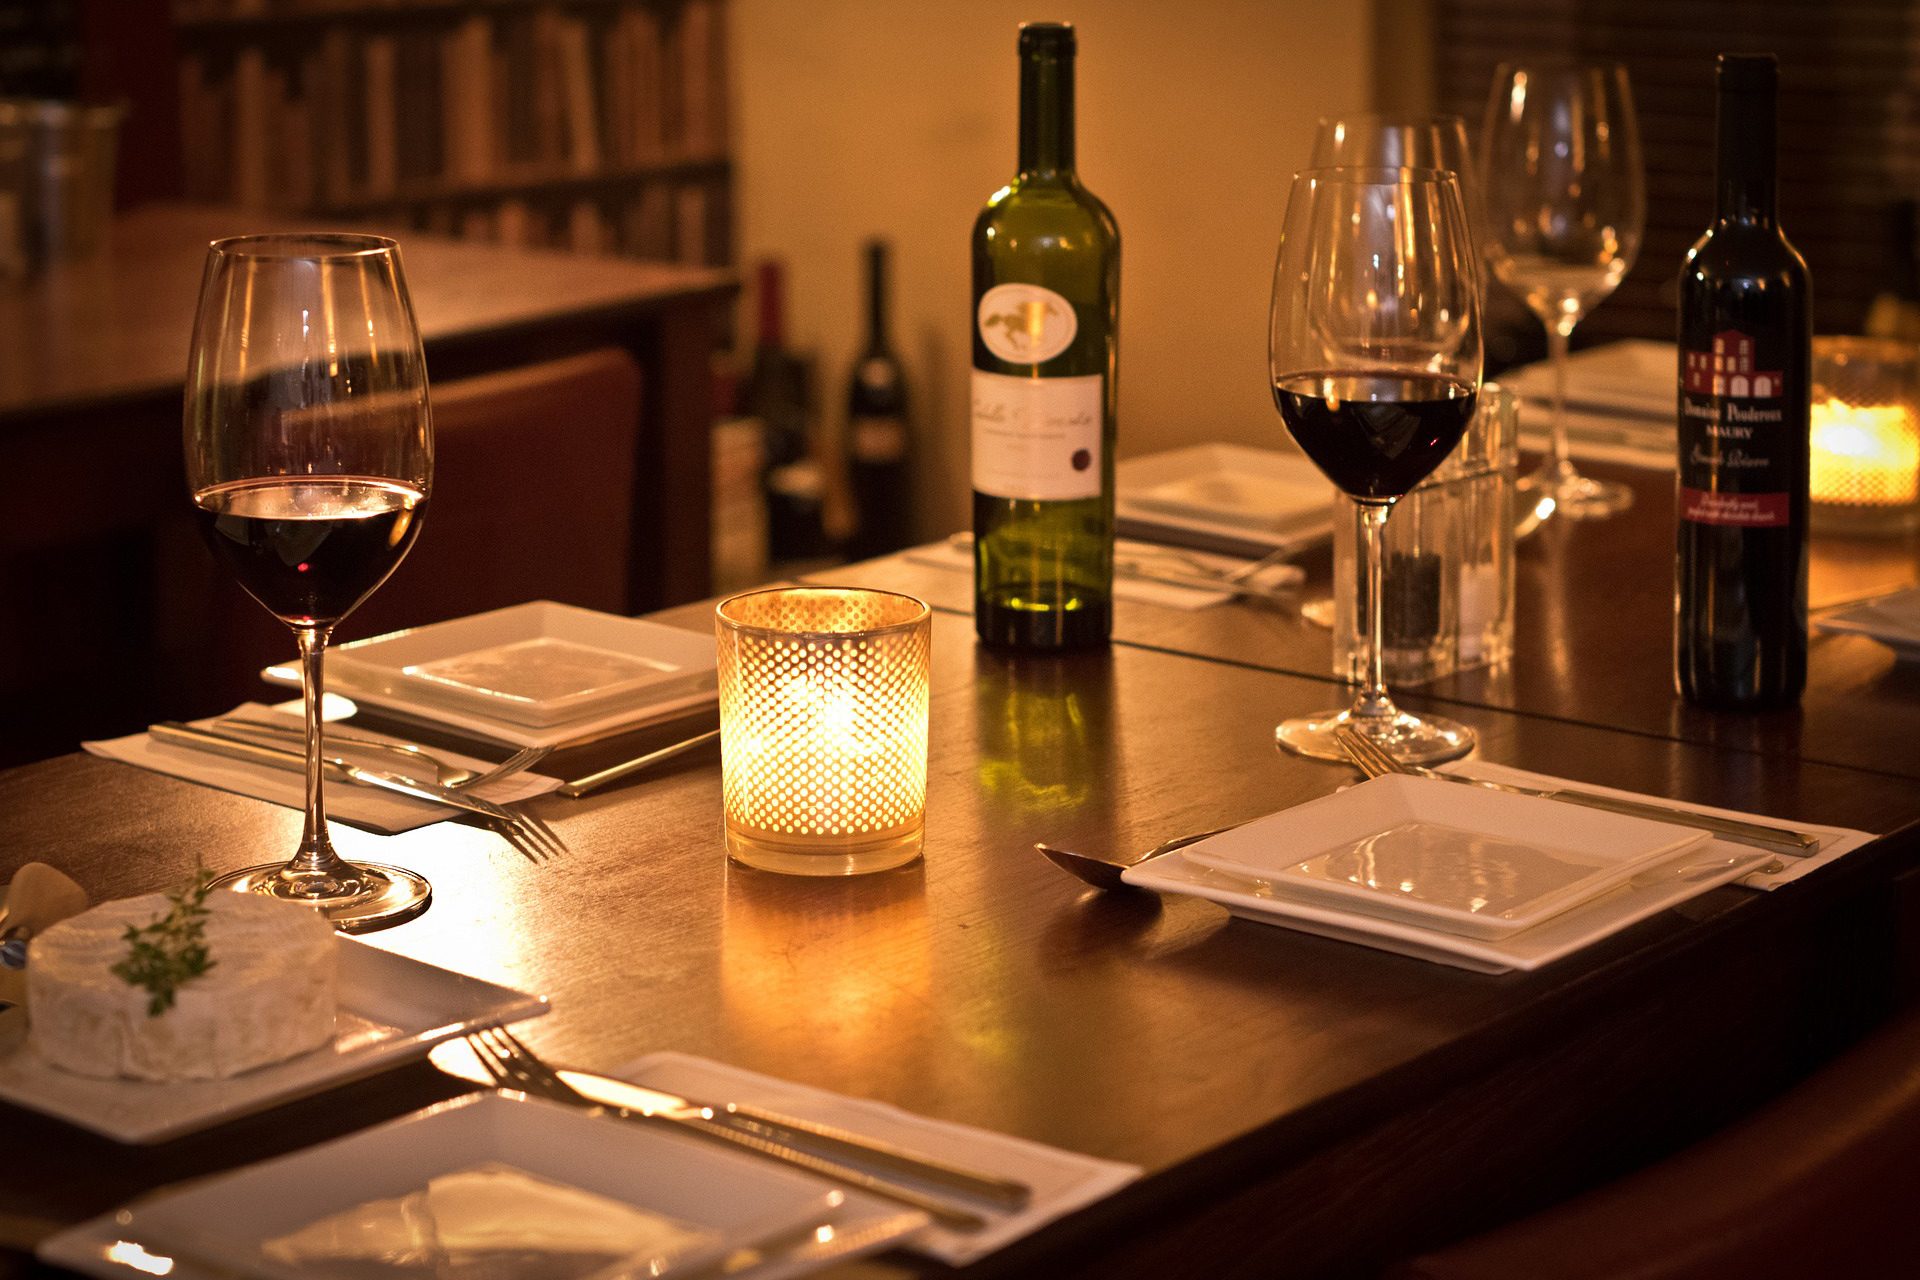 restaurant dinner wine - Serrato's Steakhouse